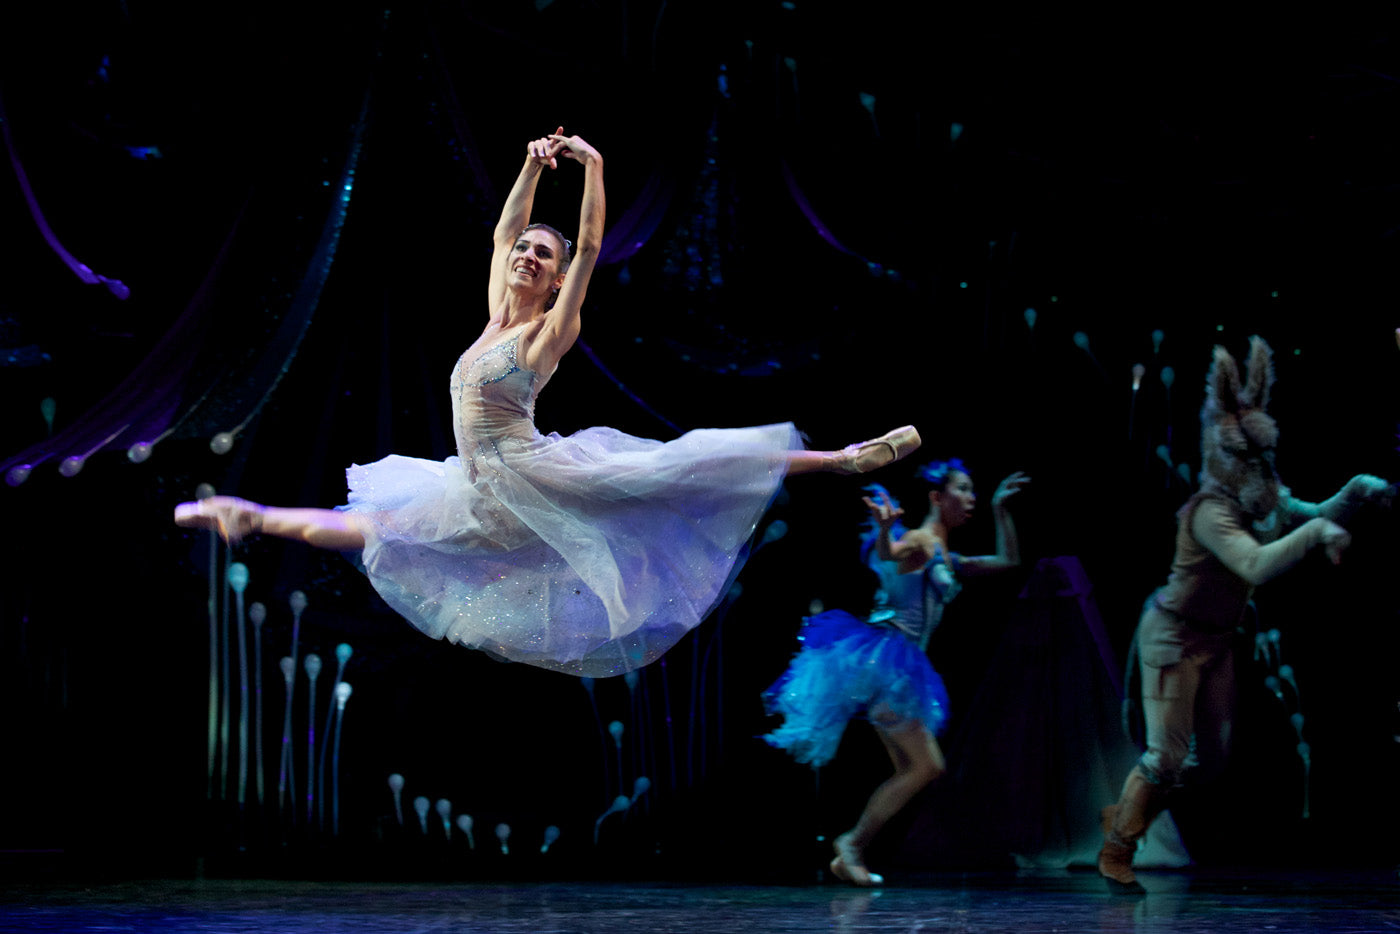 Queensland Ballet